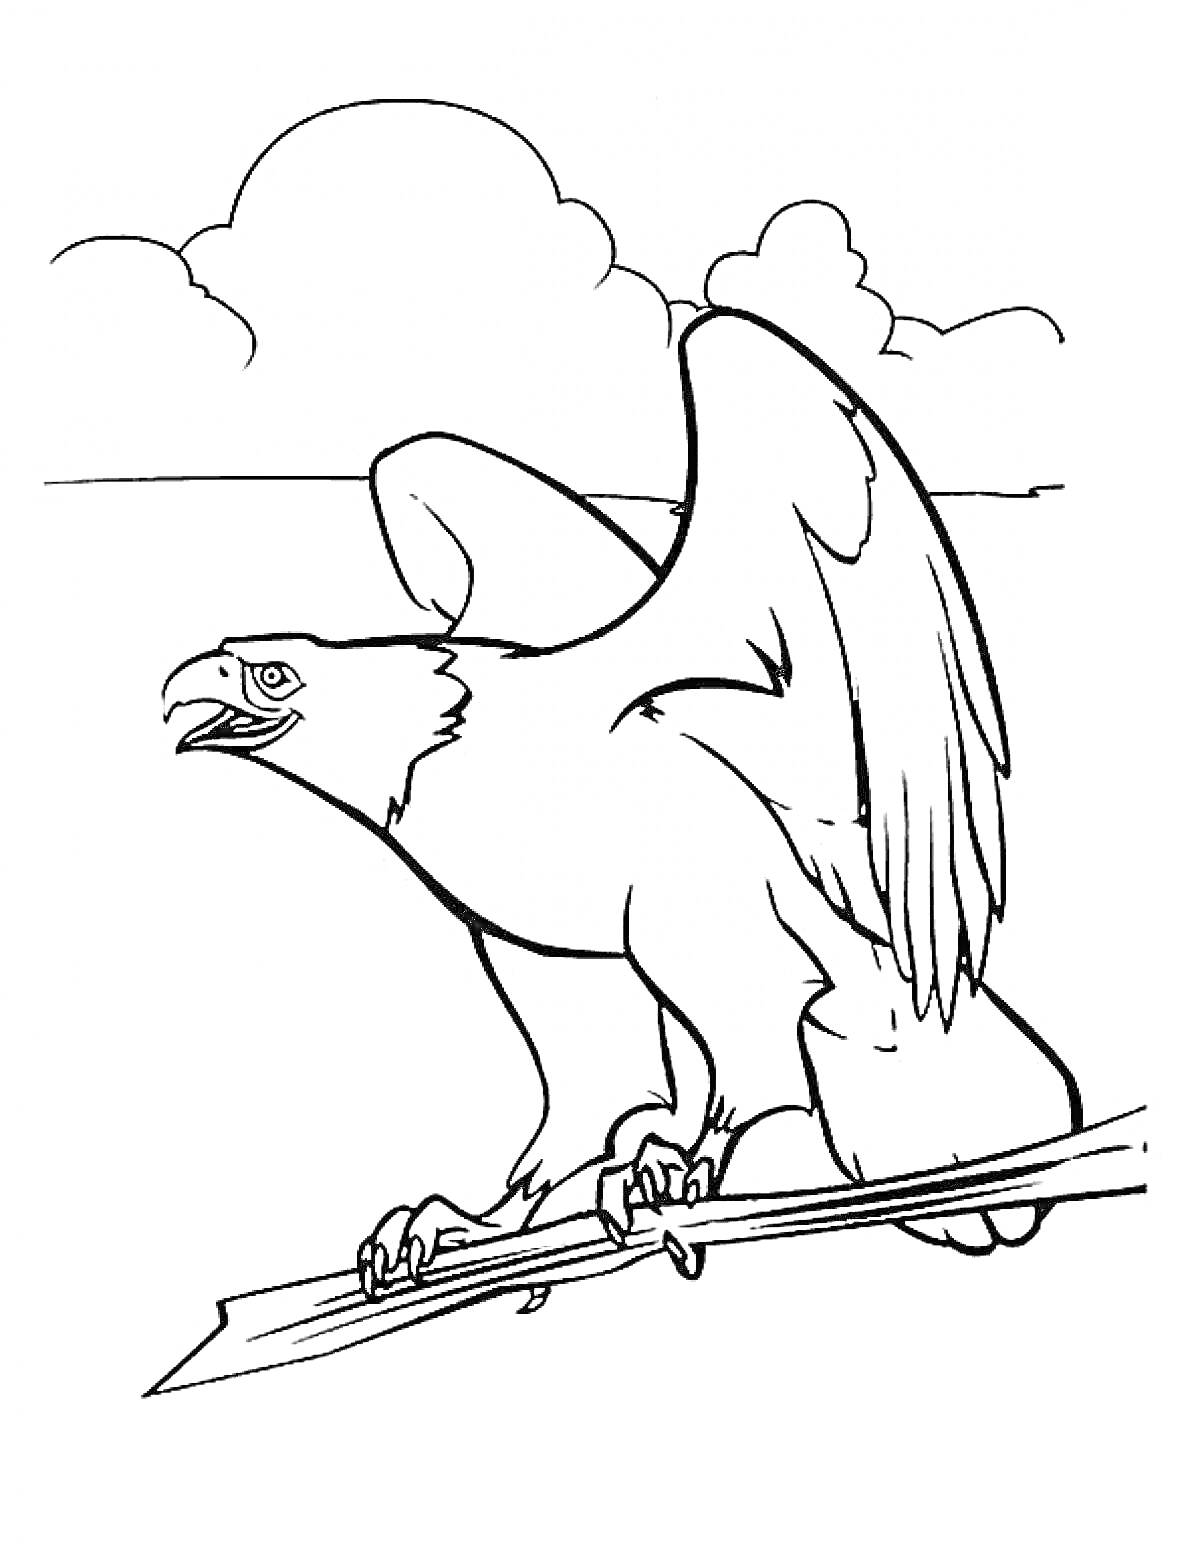 Орёл с распростёртыми крыльями на ветке перед облаками